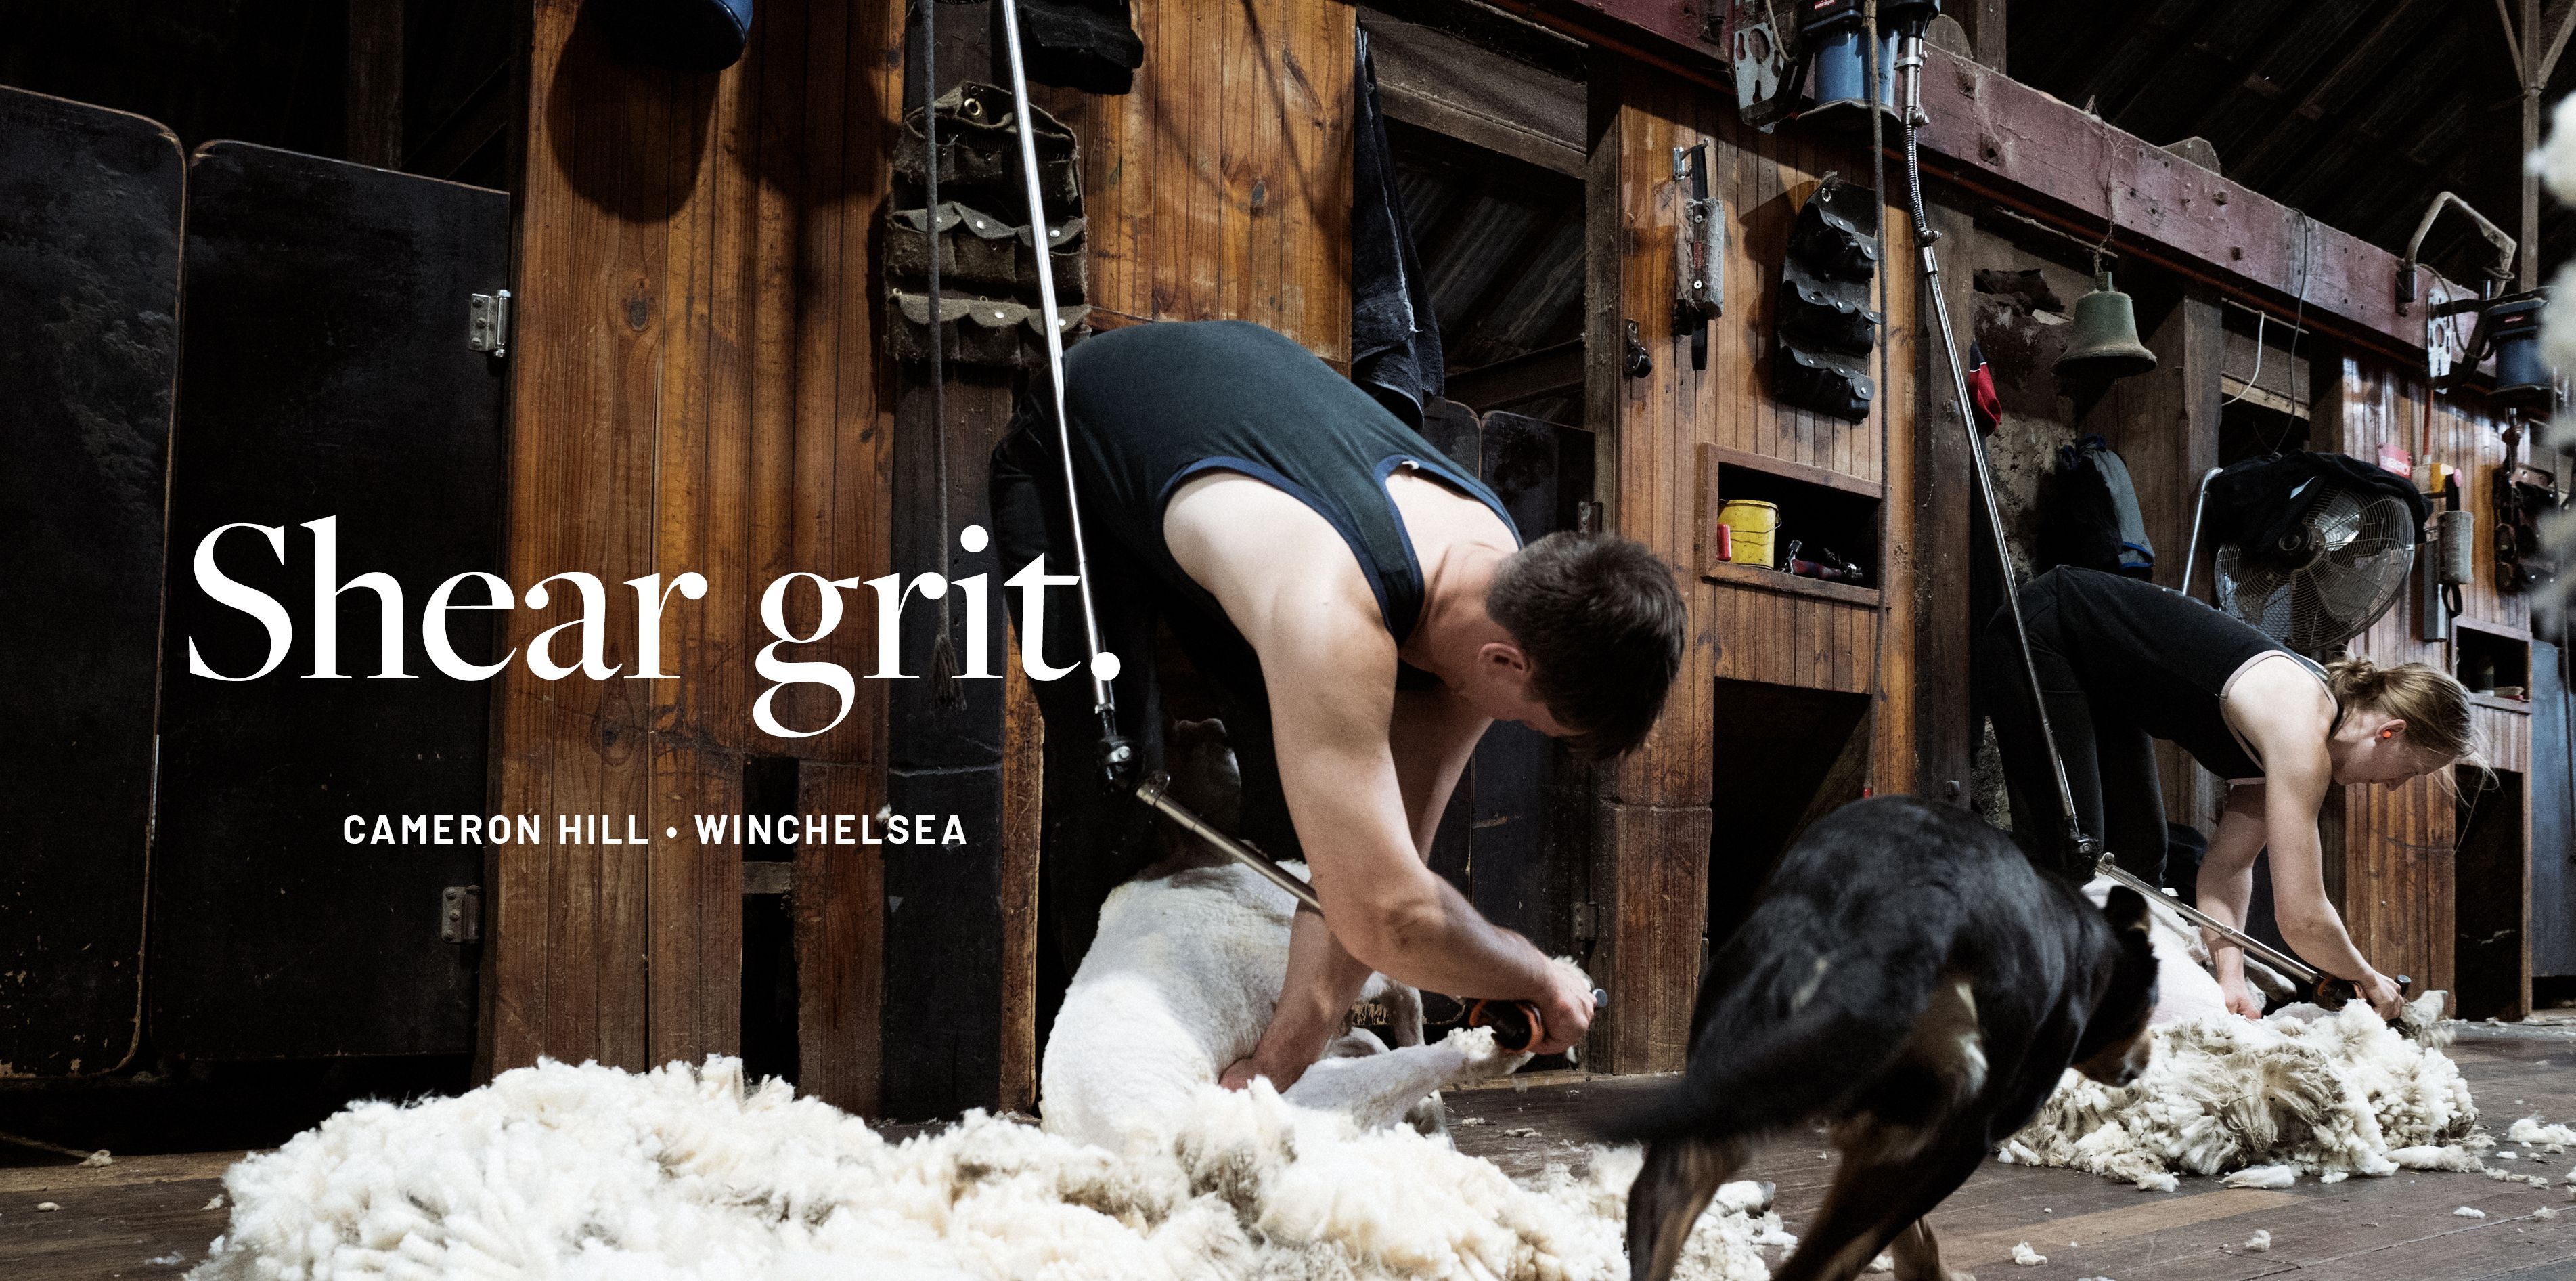 Shear grit